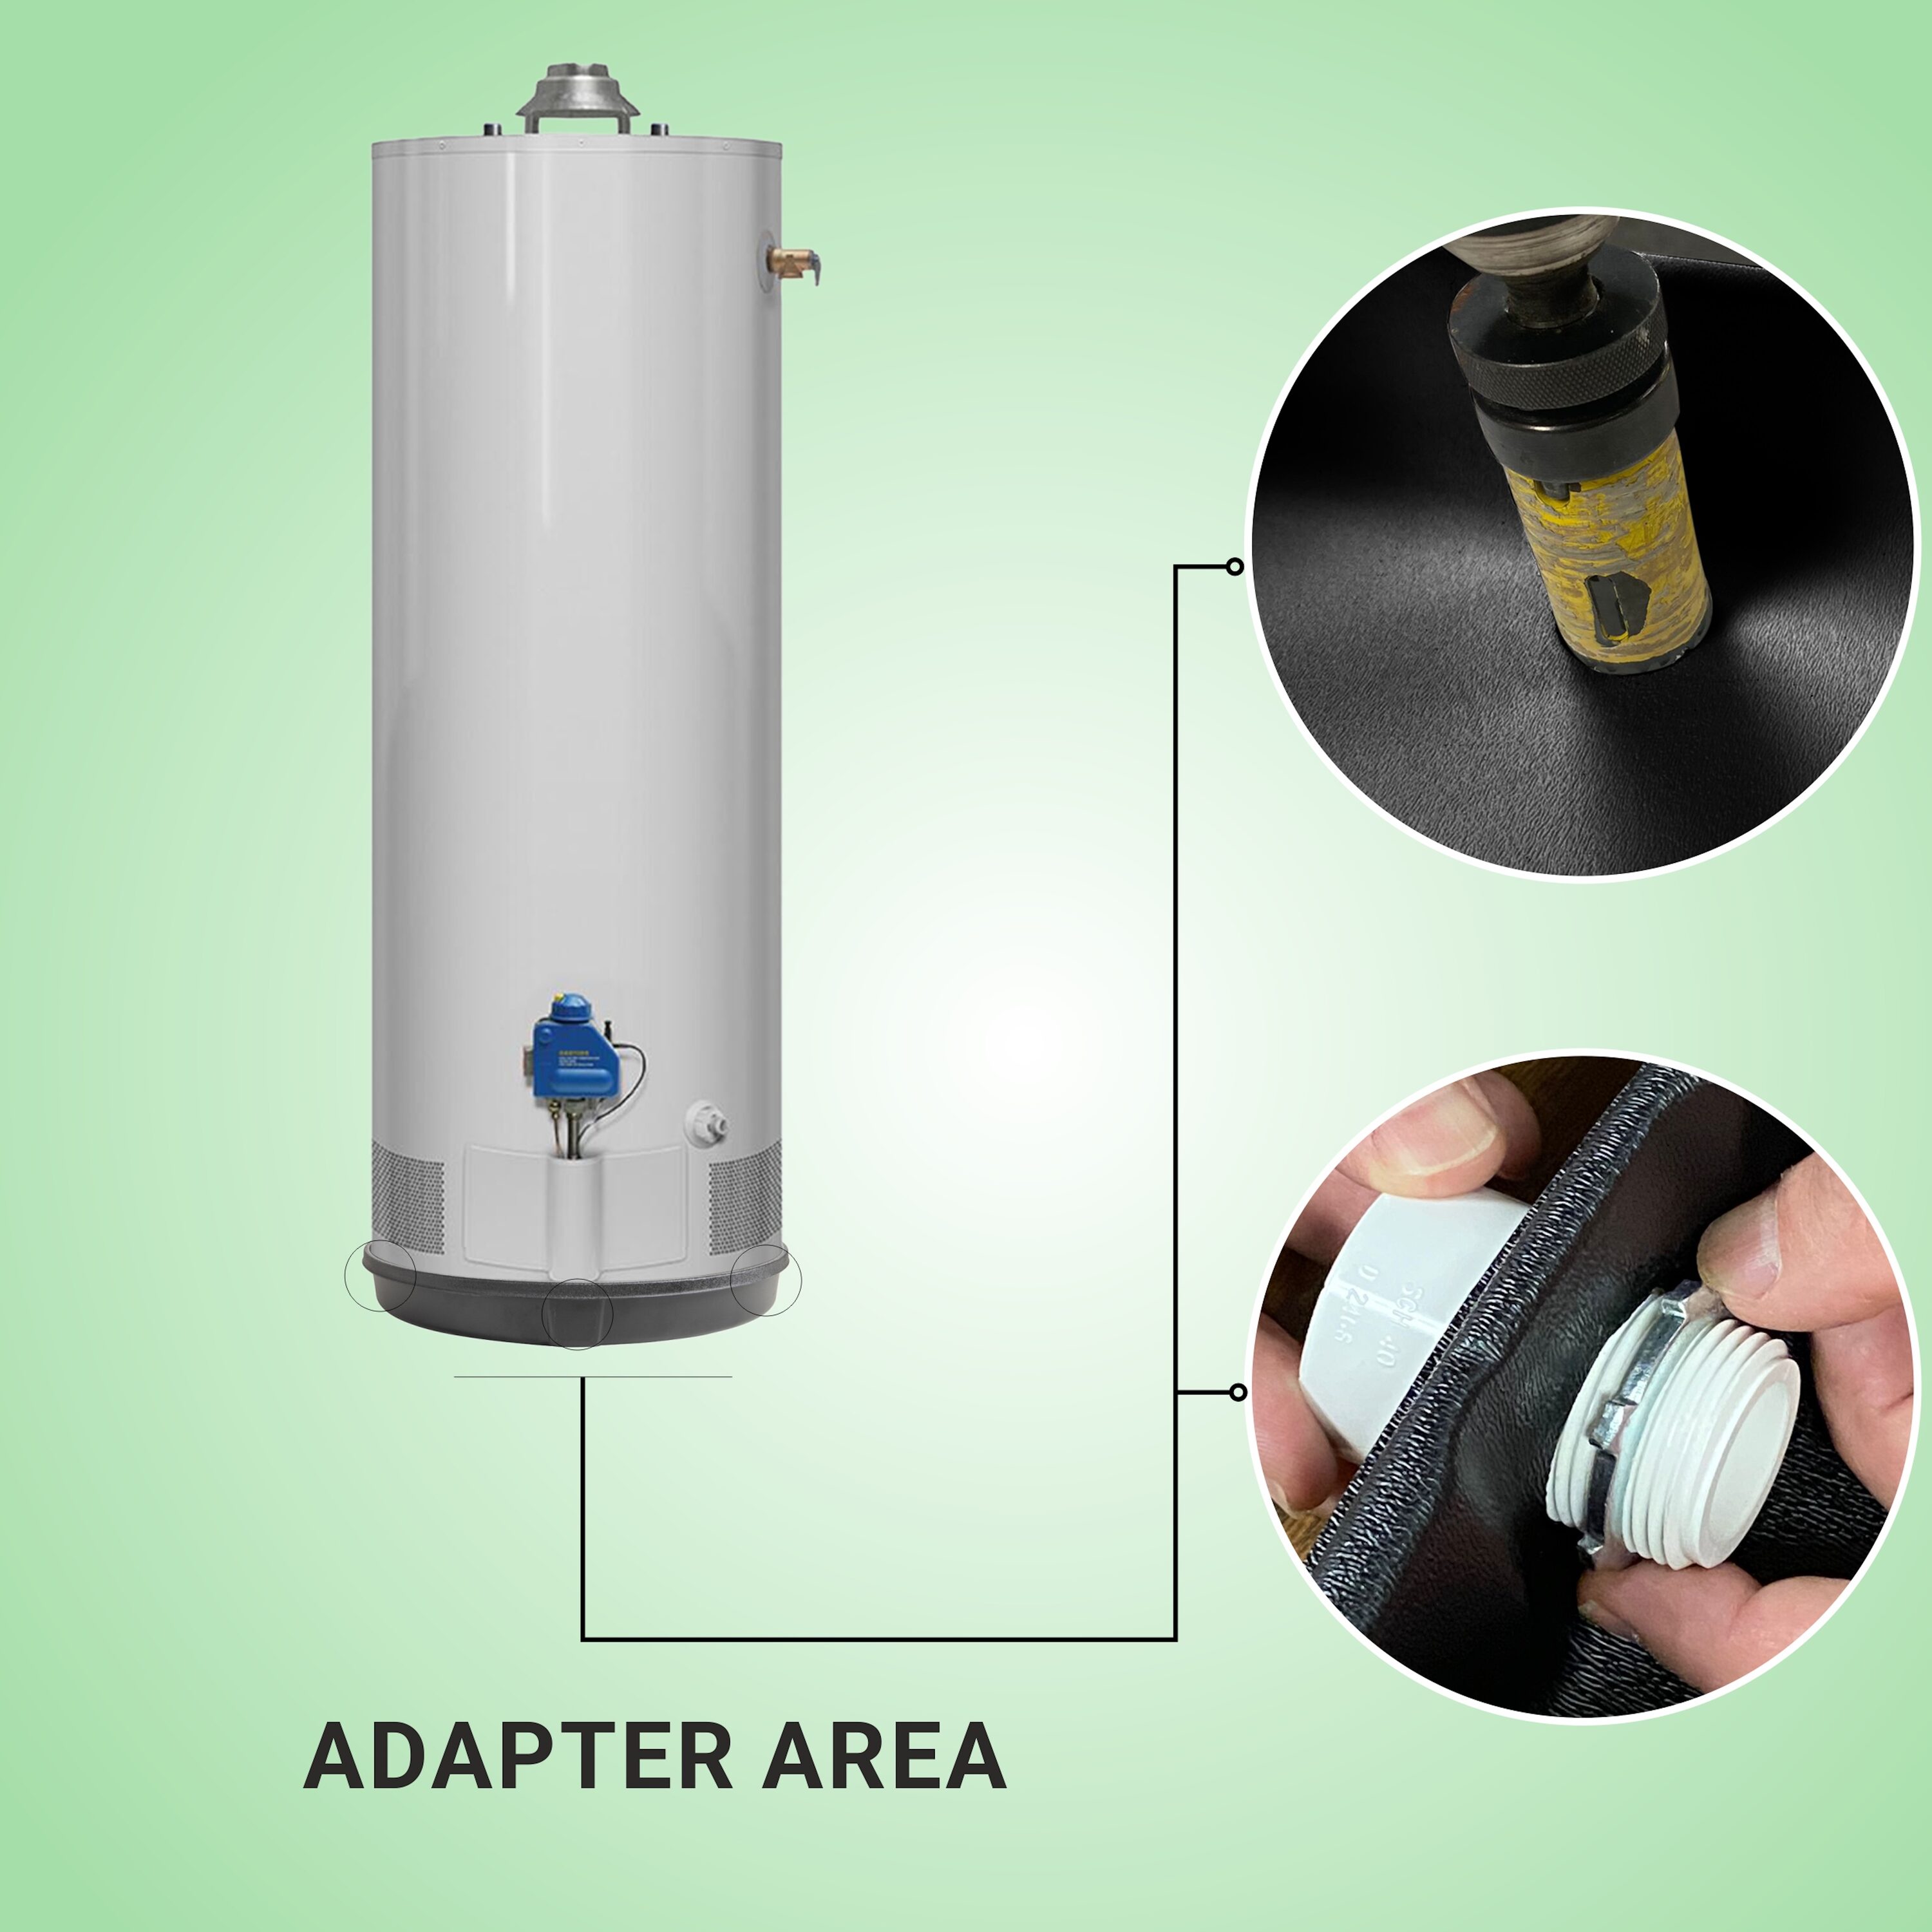 AP12935 - AP12935 - Water Heater Drain Pan - Plastic, 24 x 2-3/4